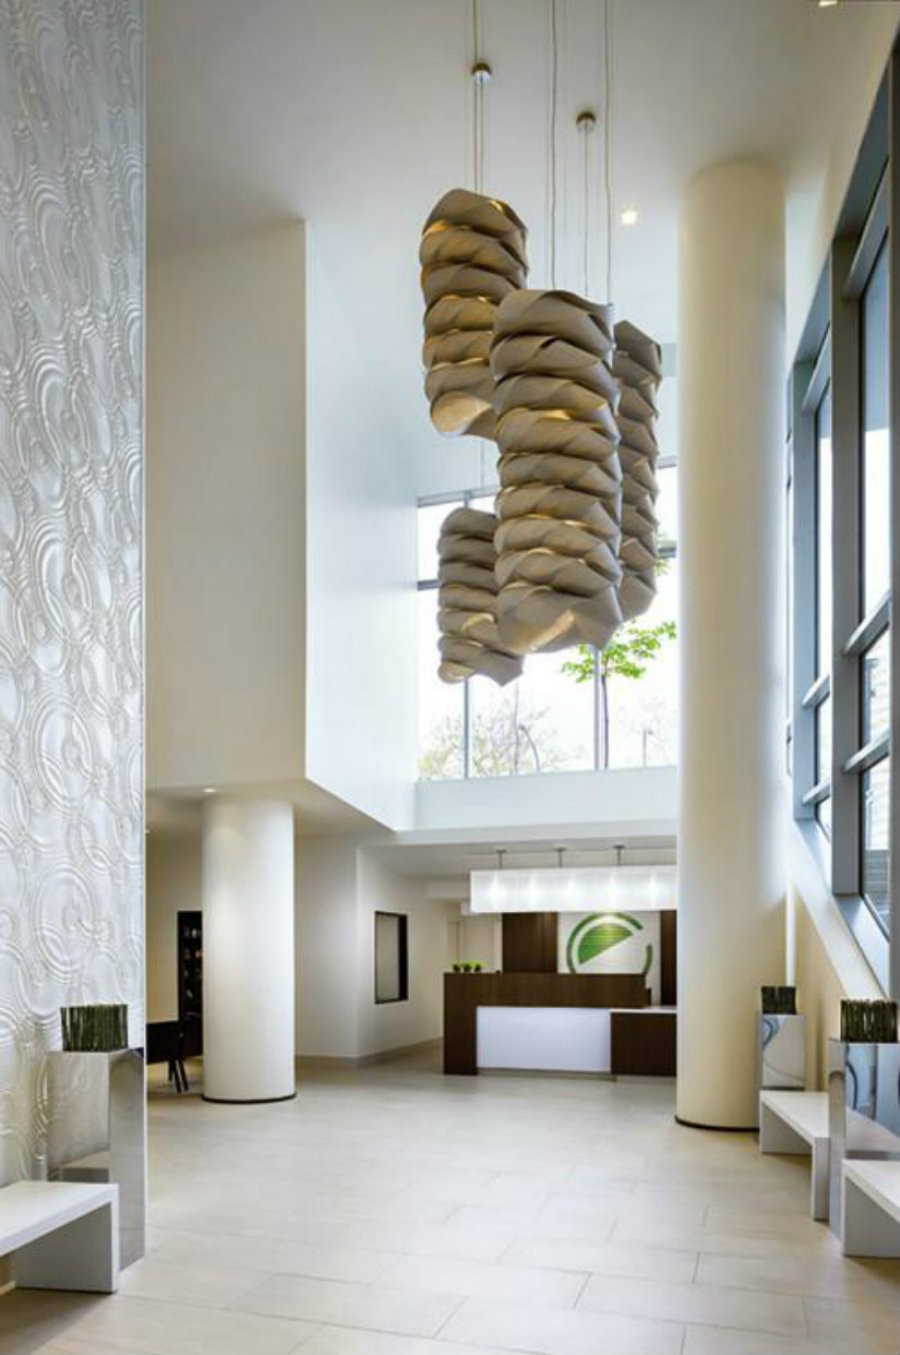 10 ideas to décor hotel lobby